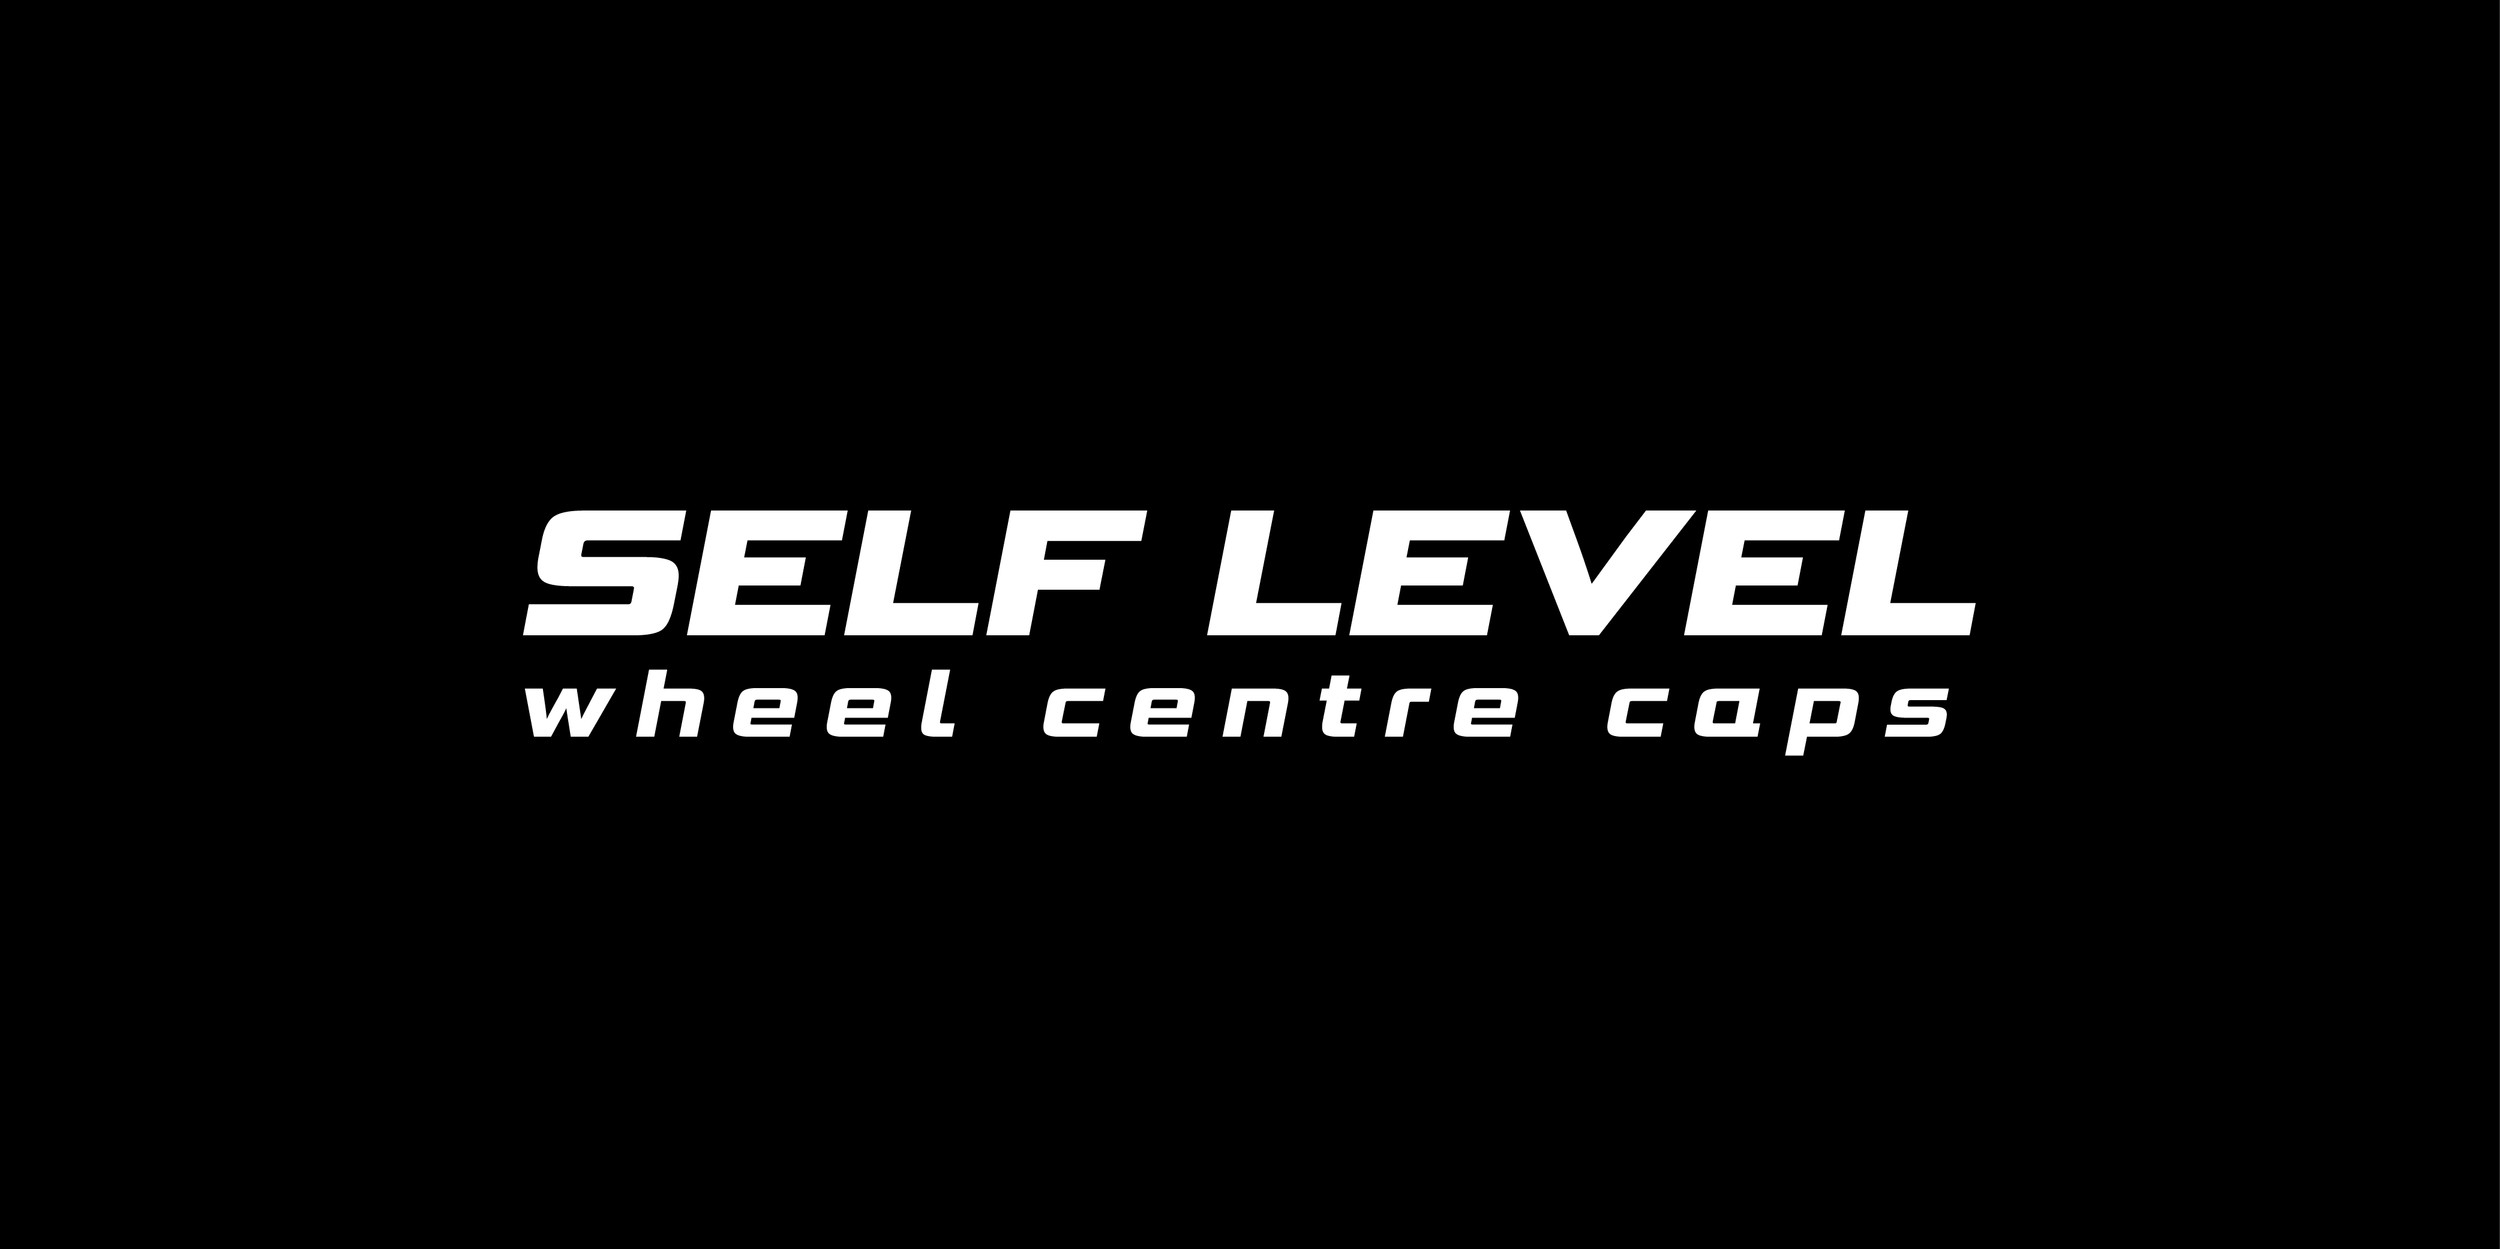 www.self-level.co.uk